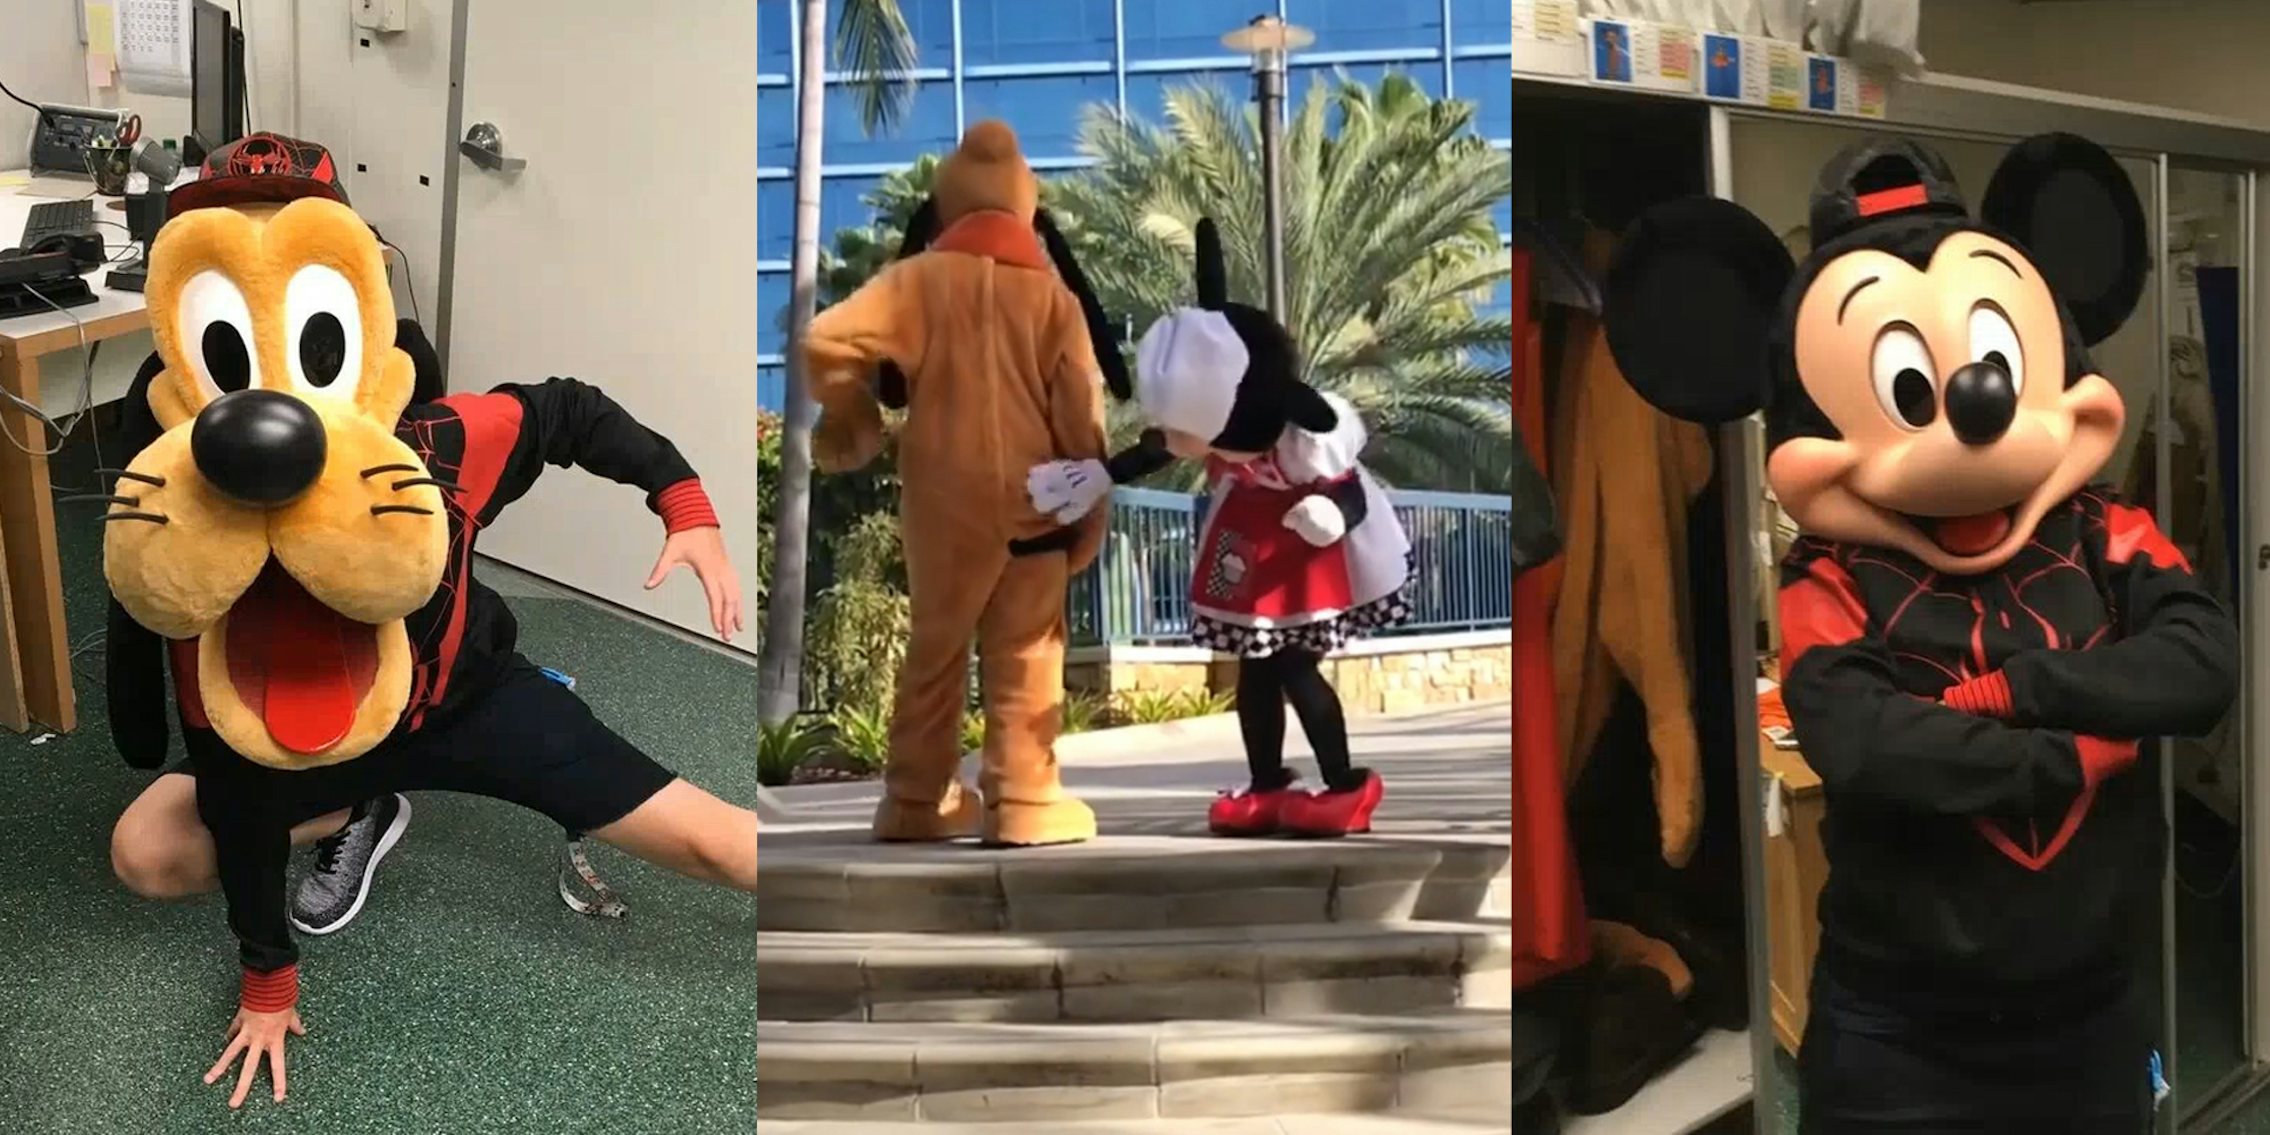 Disney cast member Goofy posing in spider man shirt (l) Disney cast Minnie and Pluto (c) Disney cast member Mickey in spider man shirt (r)